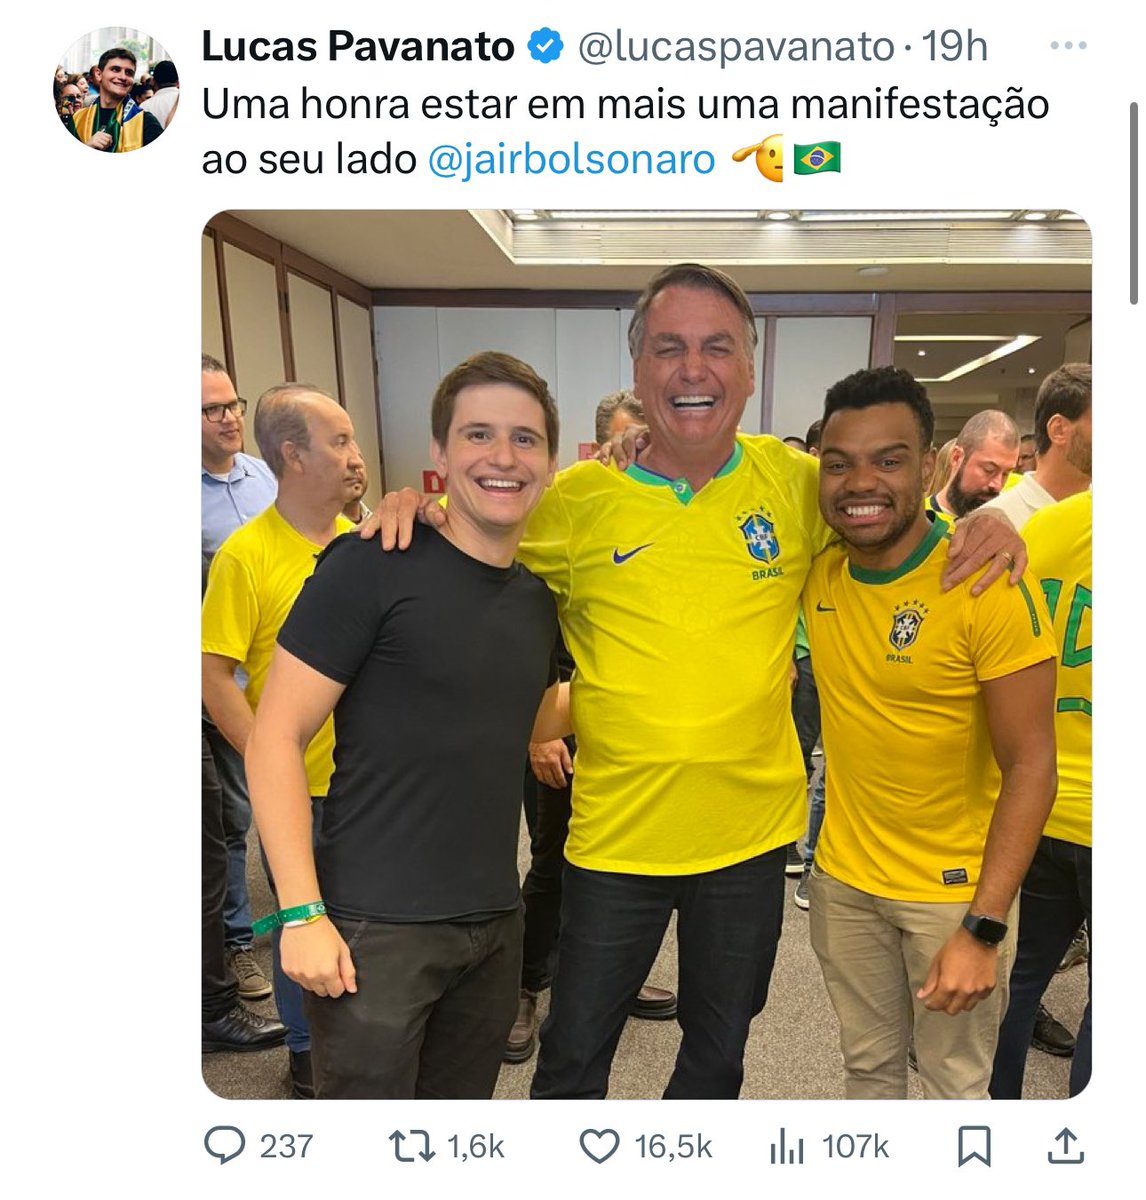 Lucas Pavanato 2021 “Tutorial para enganar os brasileiros, segundo Bolsonaro” 2024 “Uma honra estar em mais uma manifestação ao seu lado Jair Bolsonaro”